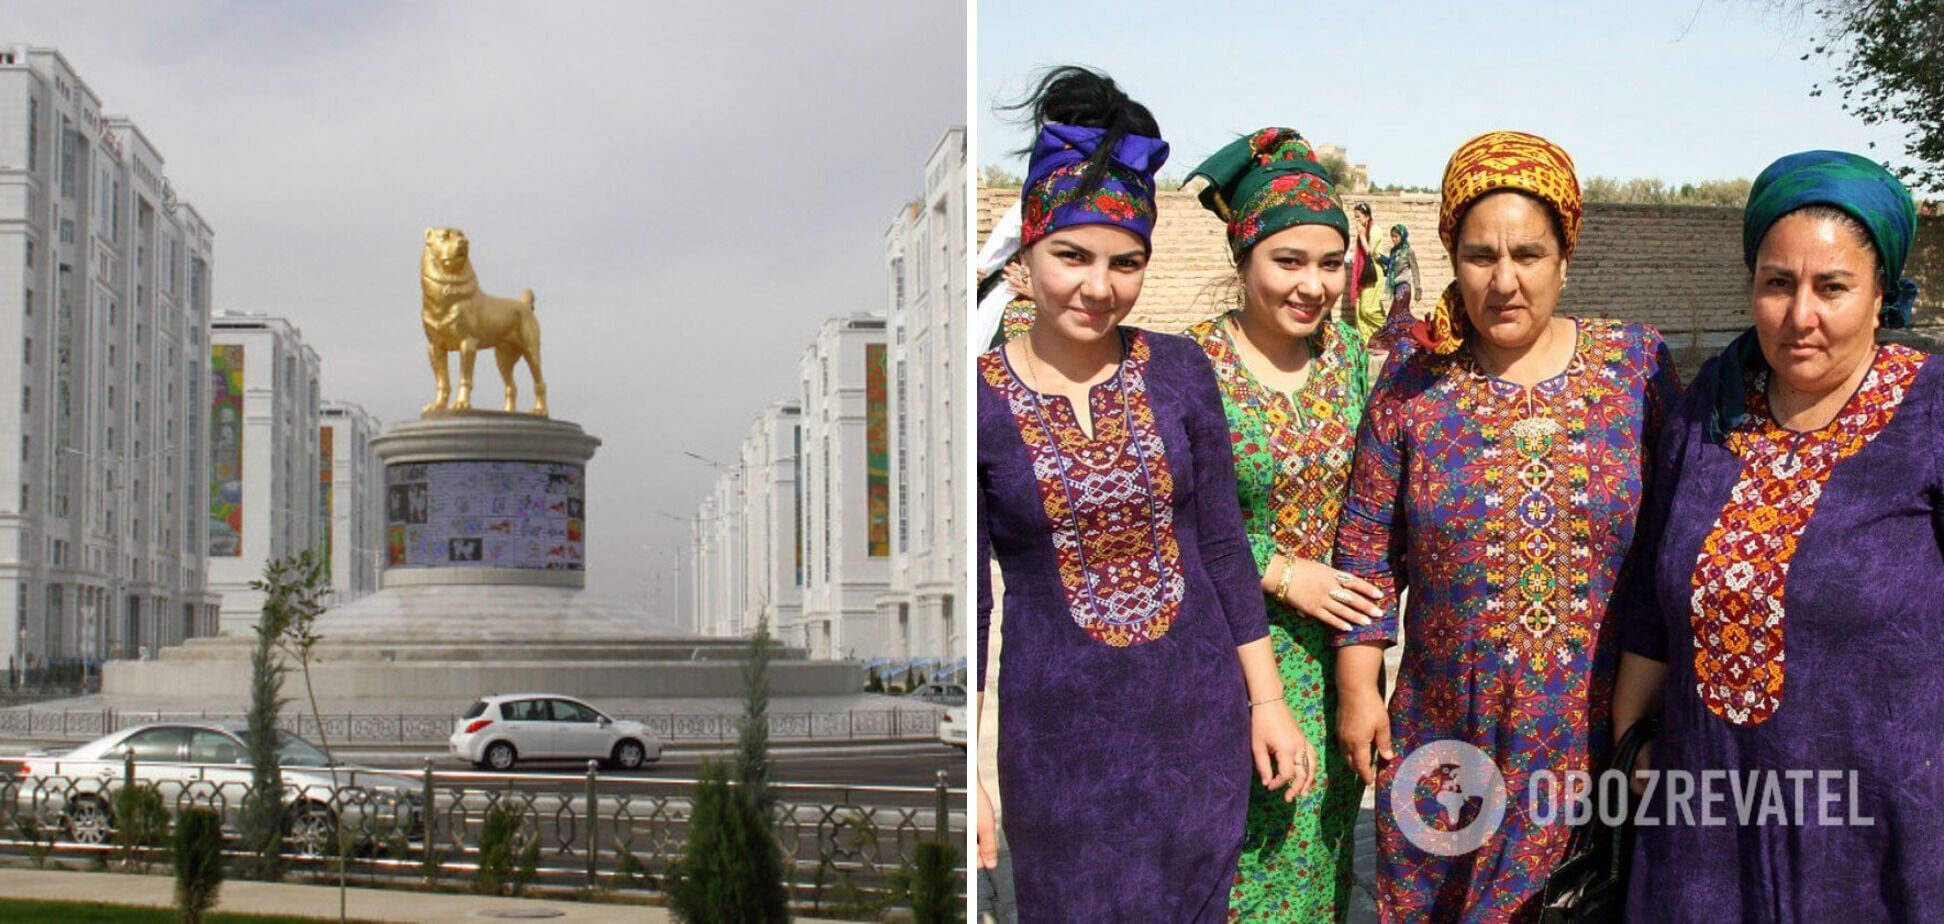 Побои за красоту и штрафы за "неправильное" белье: как в Туркменистане ограничивают права женщин 